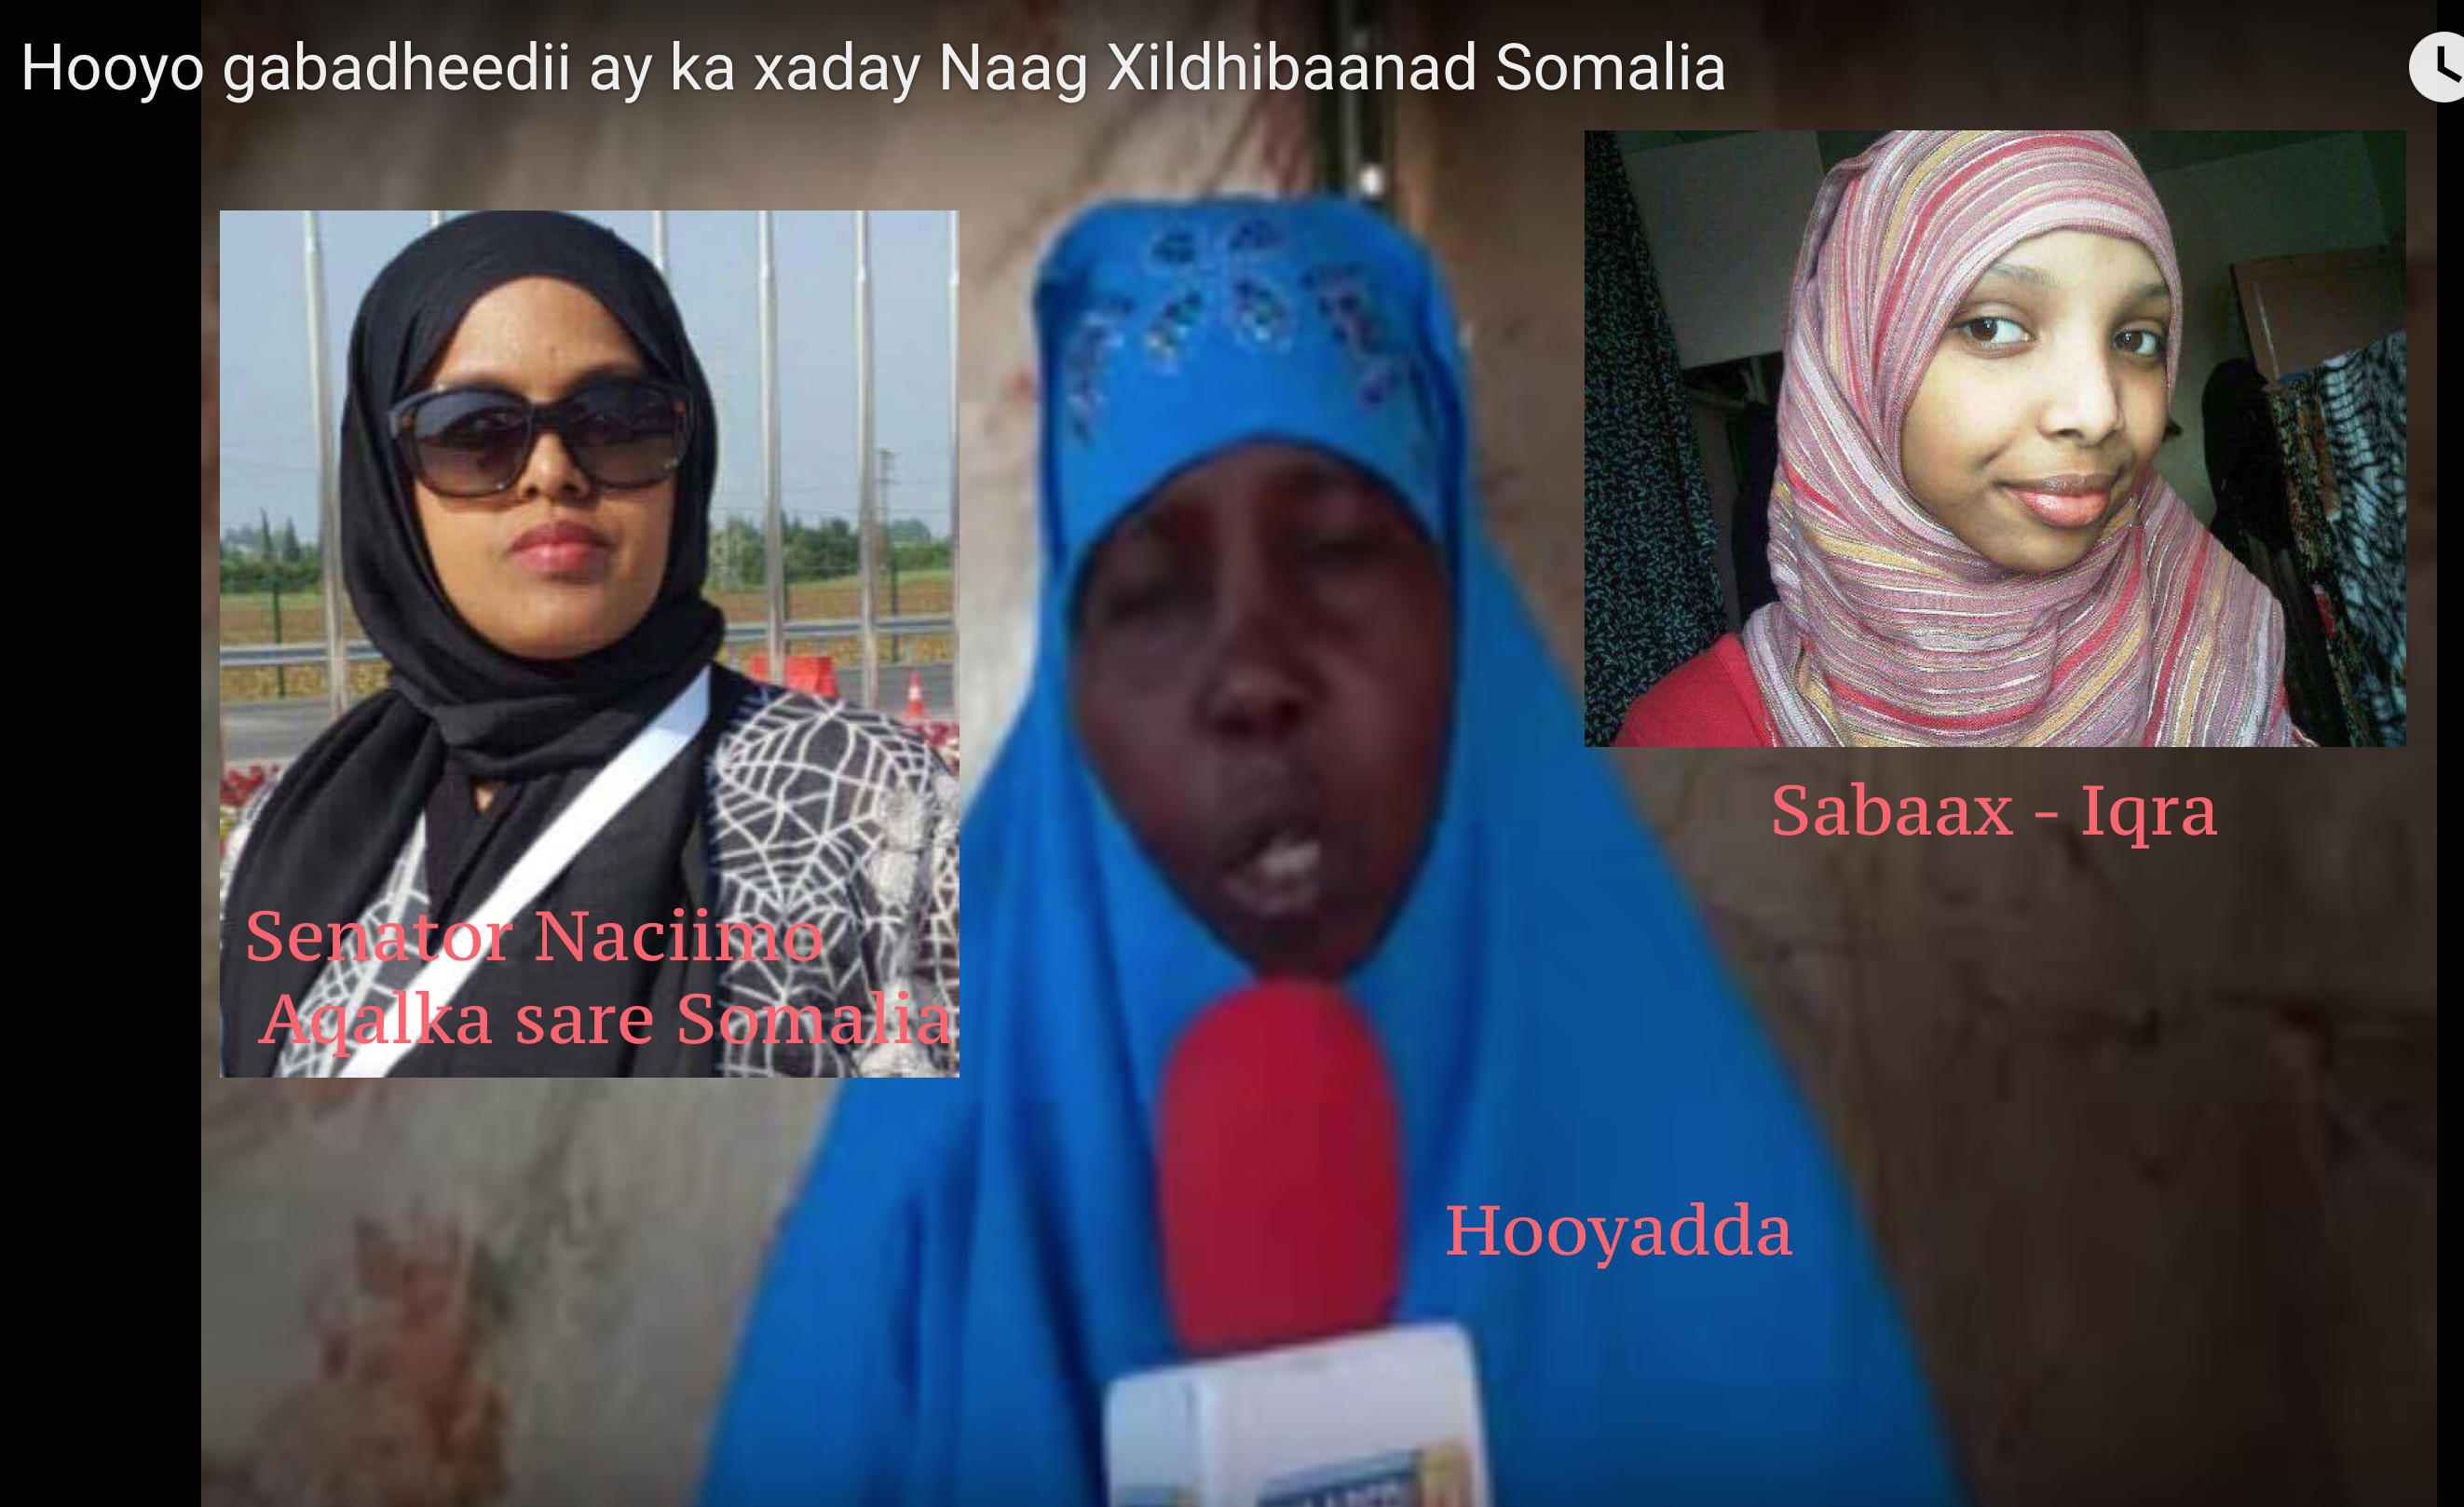 [Daawo] Xildhibaanad xaday gabadh 5 jira oo ka mid noqotay aqalka sare Somalia iyo hooyadda dhashay oo ooysay